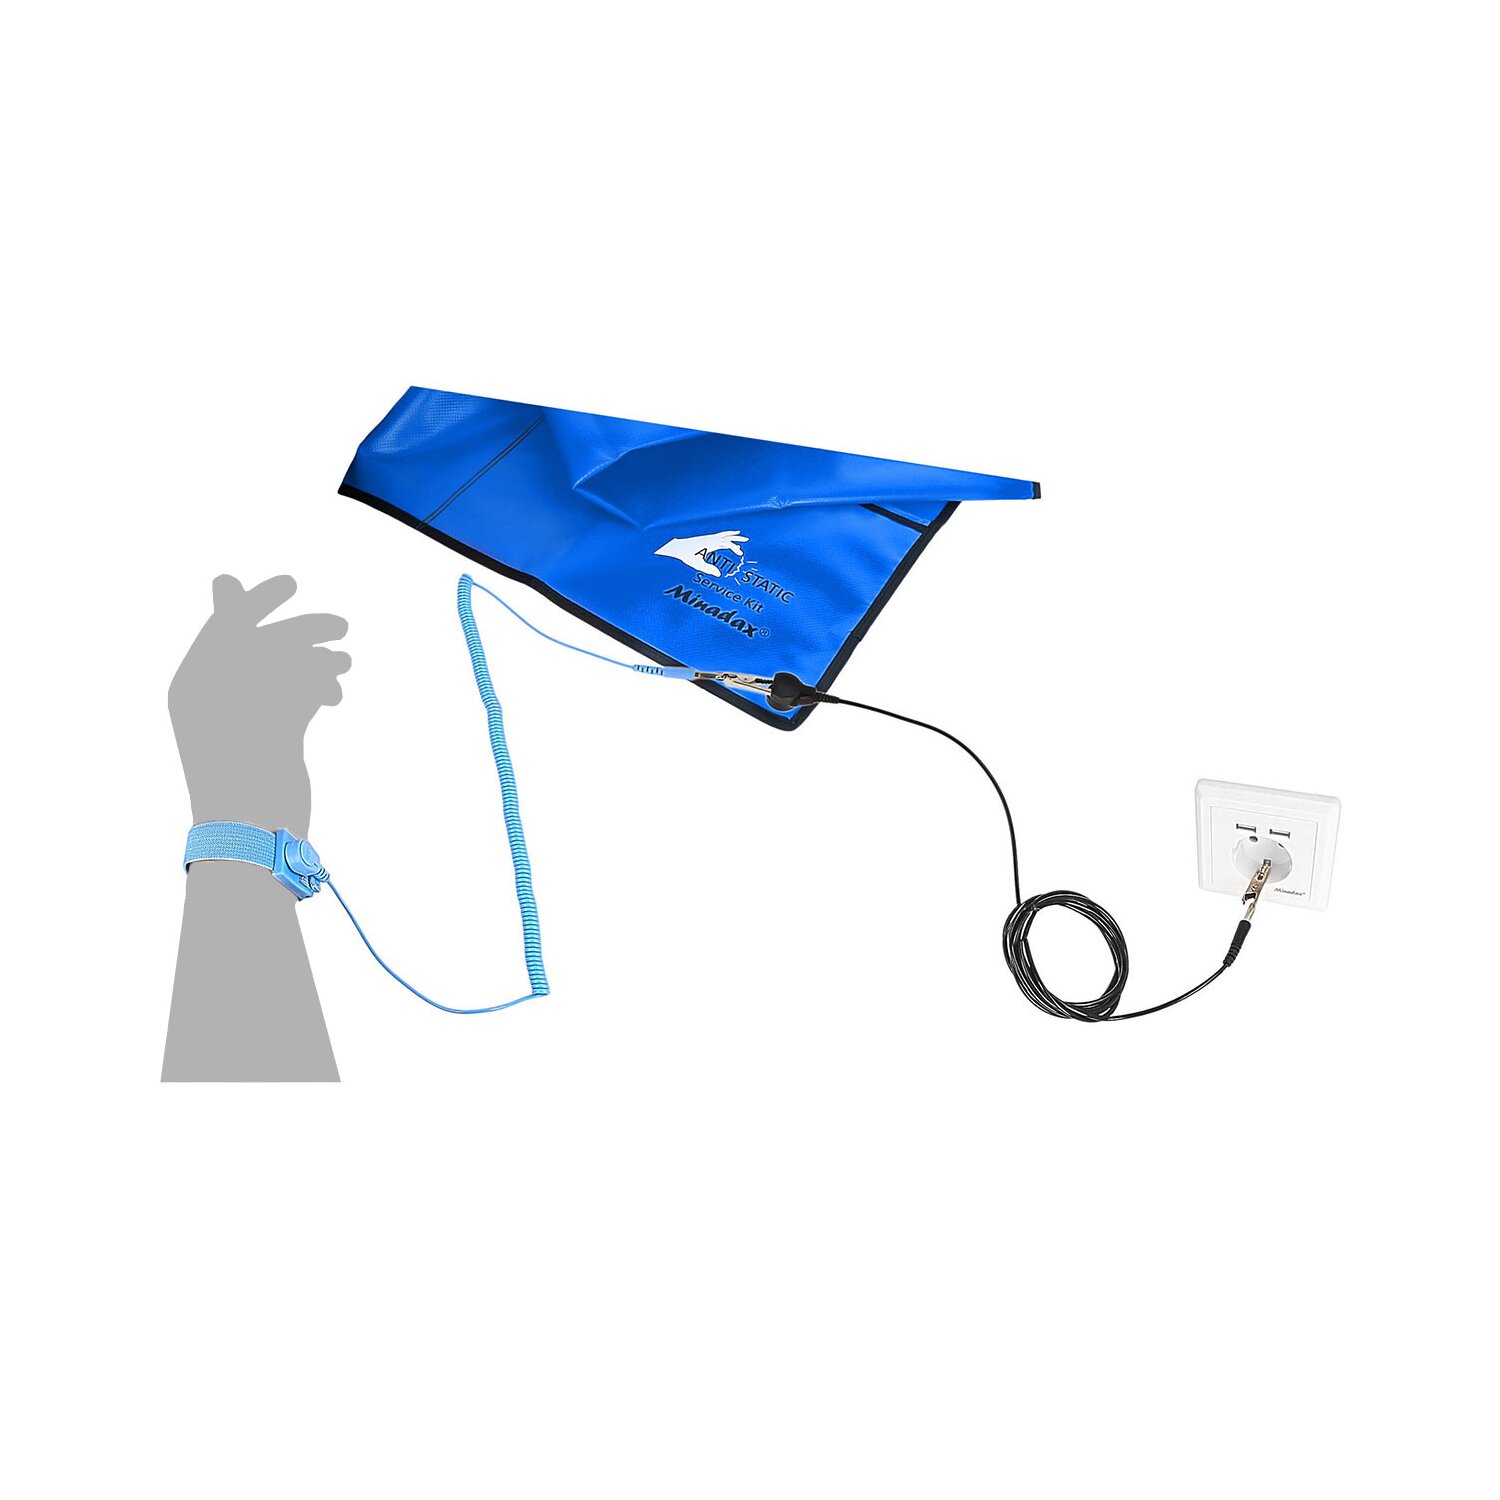 Minadax 60 x 120cm Antistatik-Portabel Set + Tasche ESD Antistatikmatte in  Blau, Handgelenksschlaufe und Erdungskabel - Für ein sicheres Arbeiten und